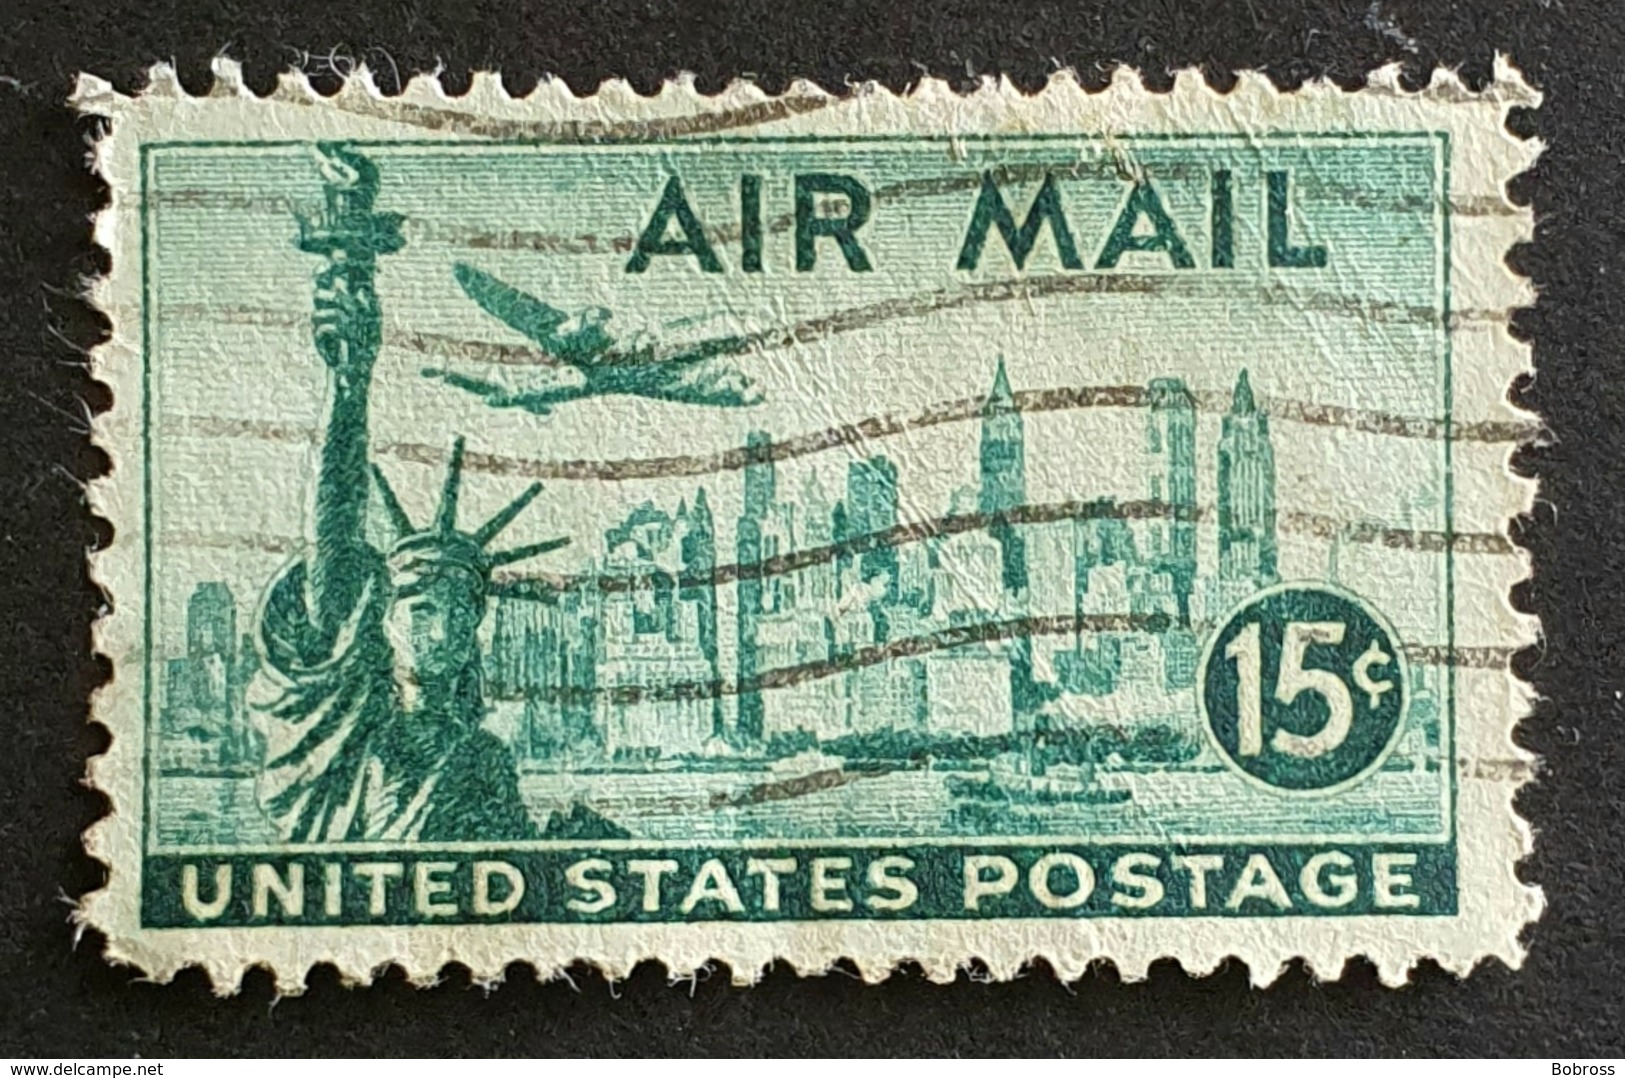 Airmail,  #C35, Statue Of Liberty, United States Of America, USA, Used - 2b. 1941-1960 Ongebruikt